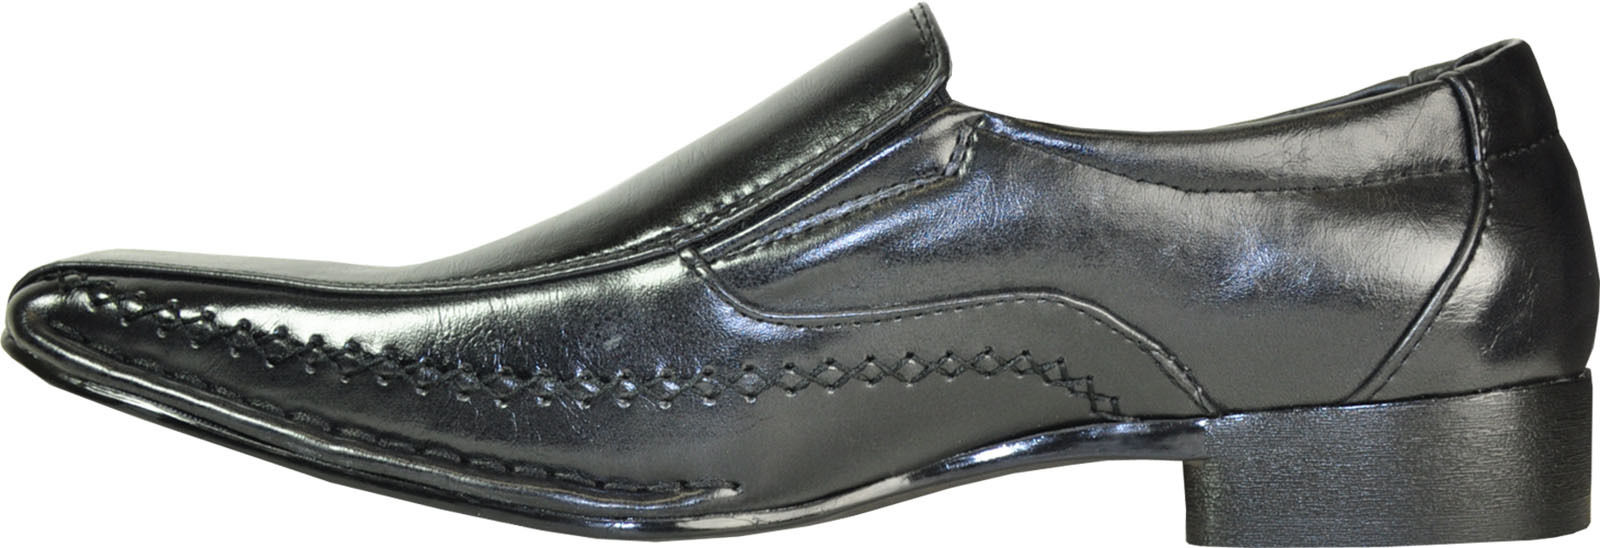 Coronado Marino-2 Dress Shoe Fashion Point Bicycle Toe with Leather Lining Black(8.5 D(M)US - image 5 of 7